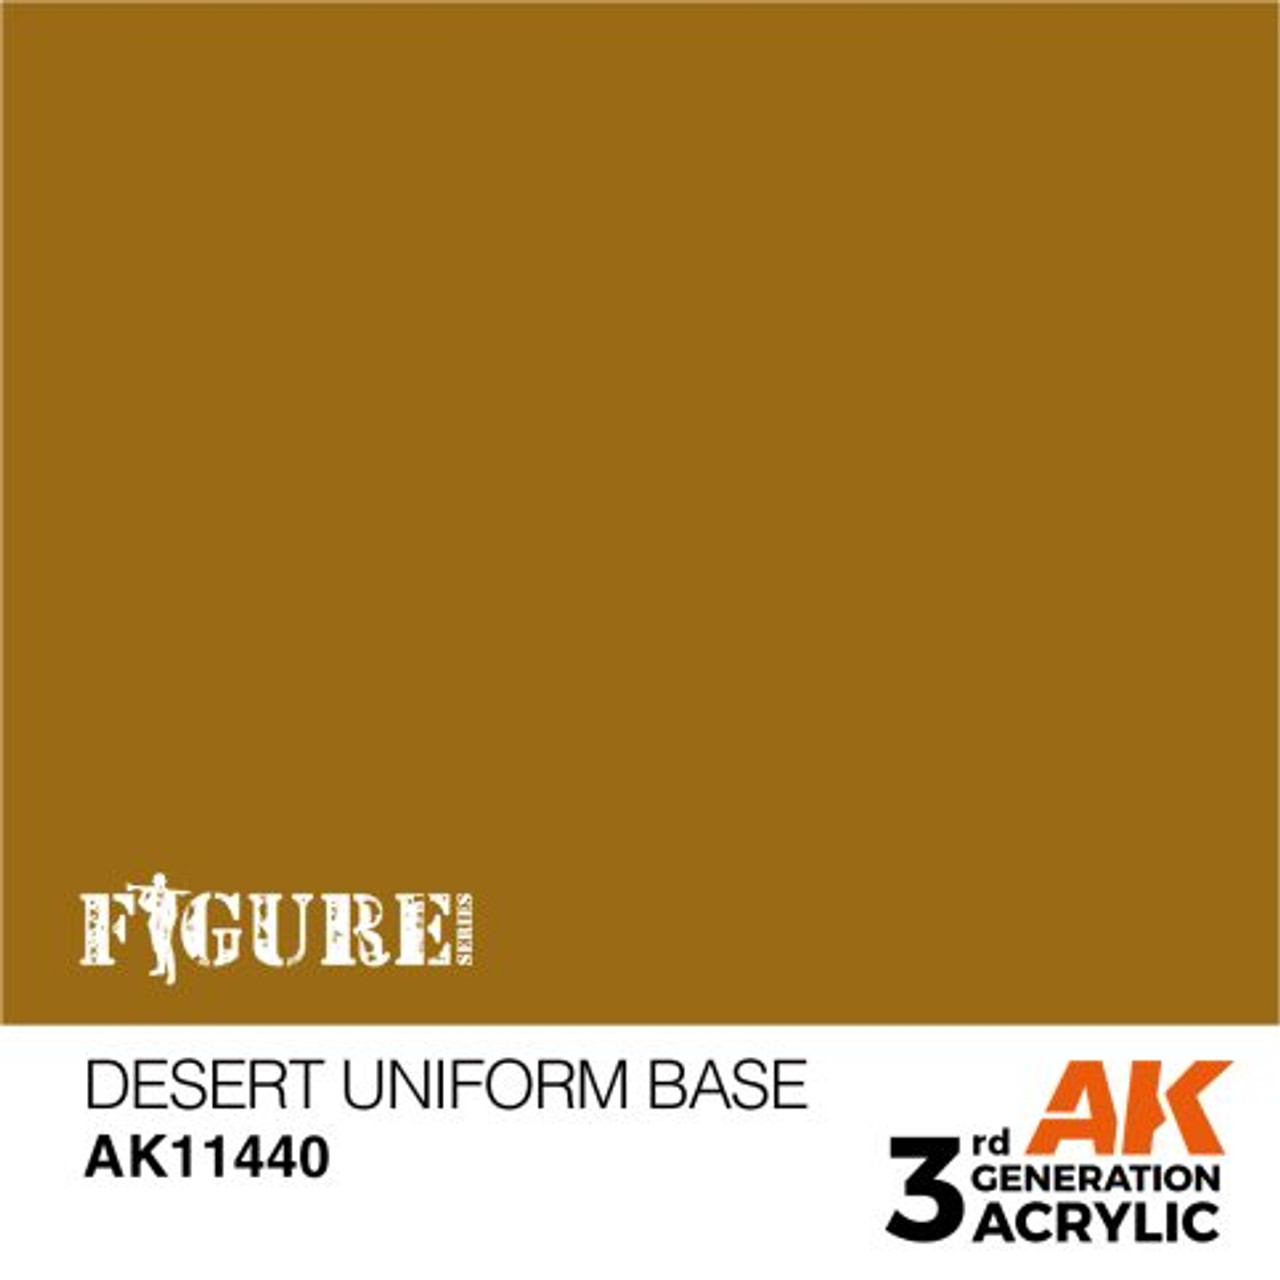 3G FIG 440 - Desert Uniform Base